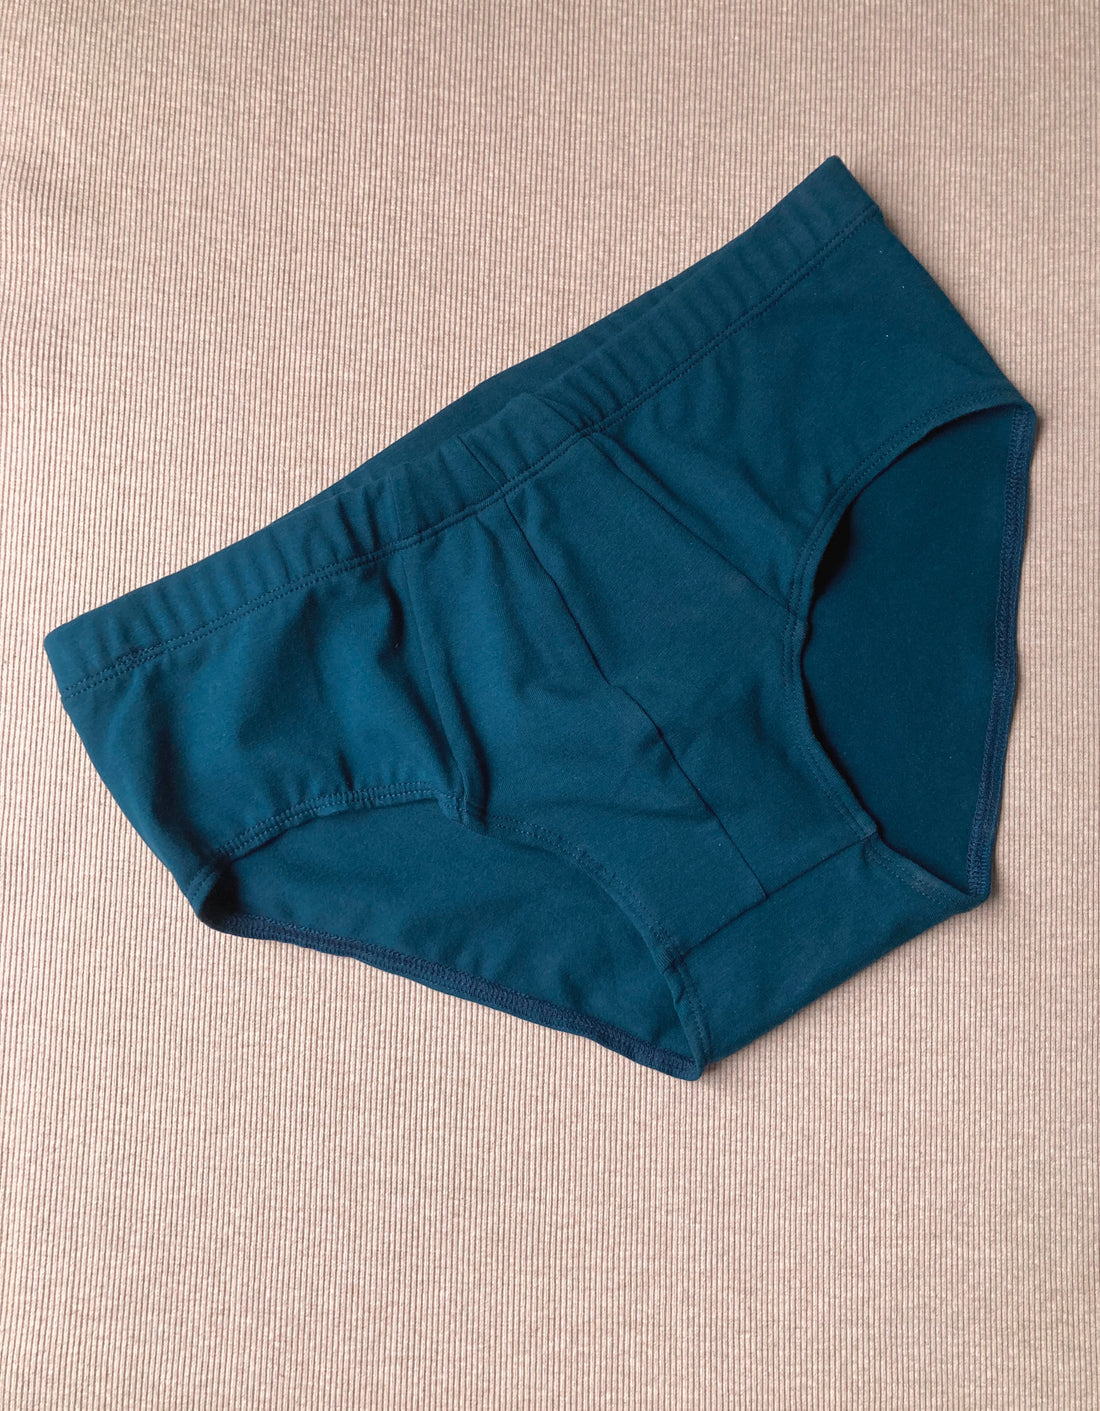 Men's underwear No6047m – atelier b